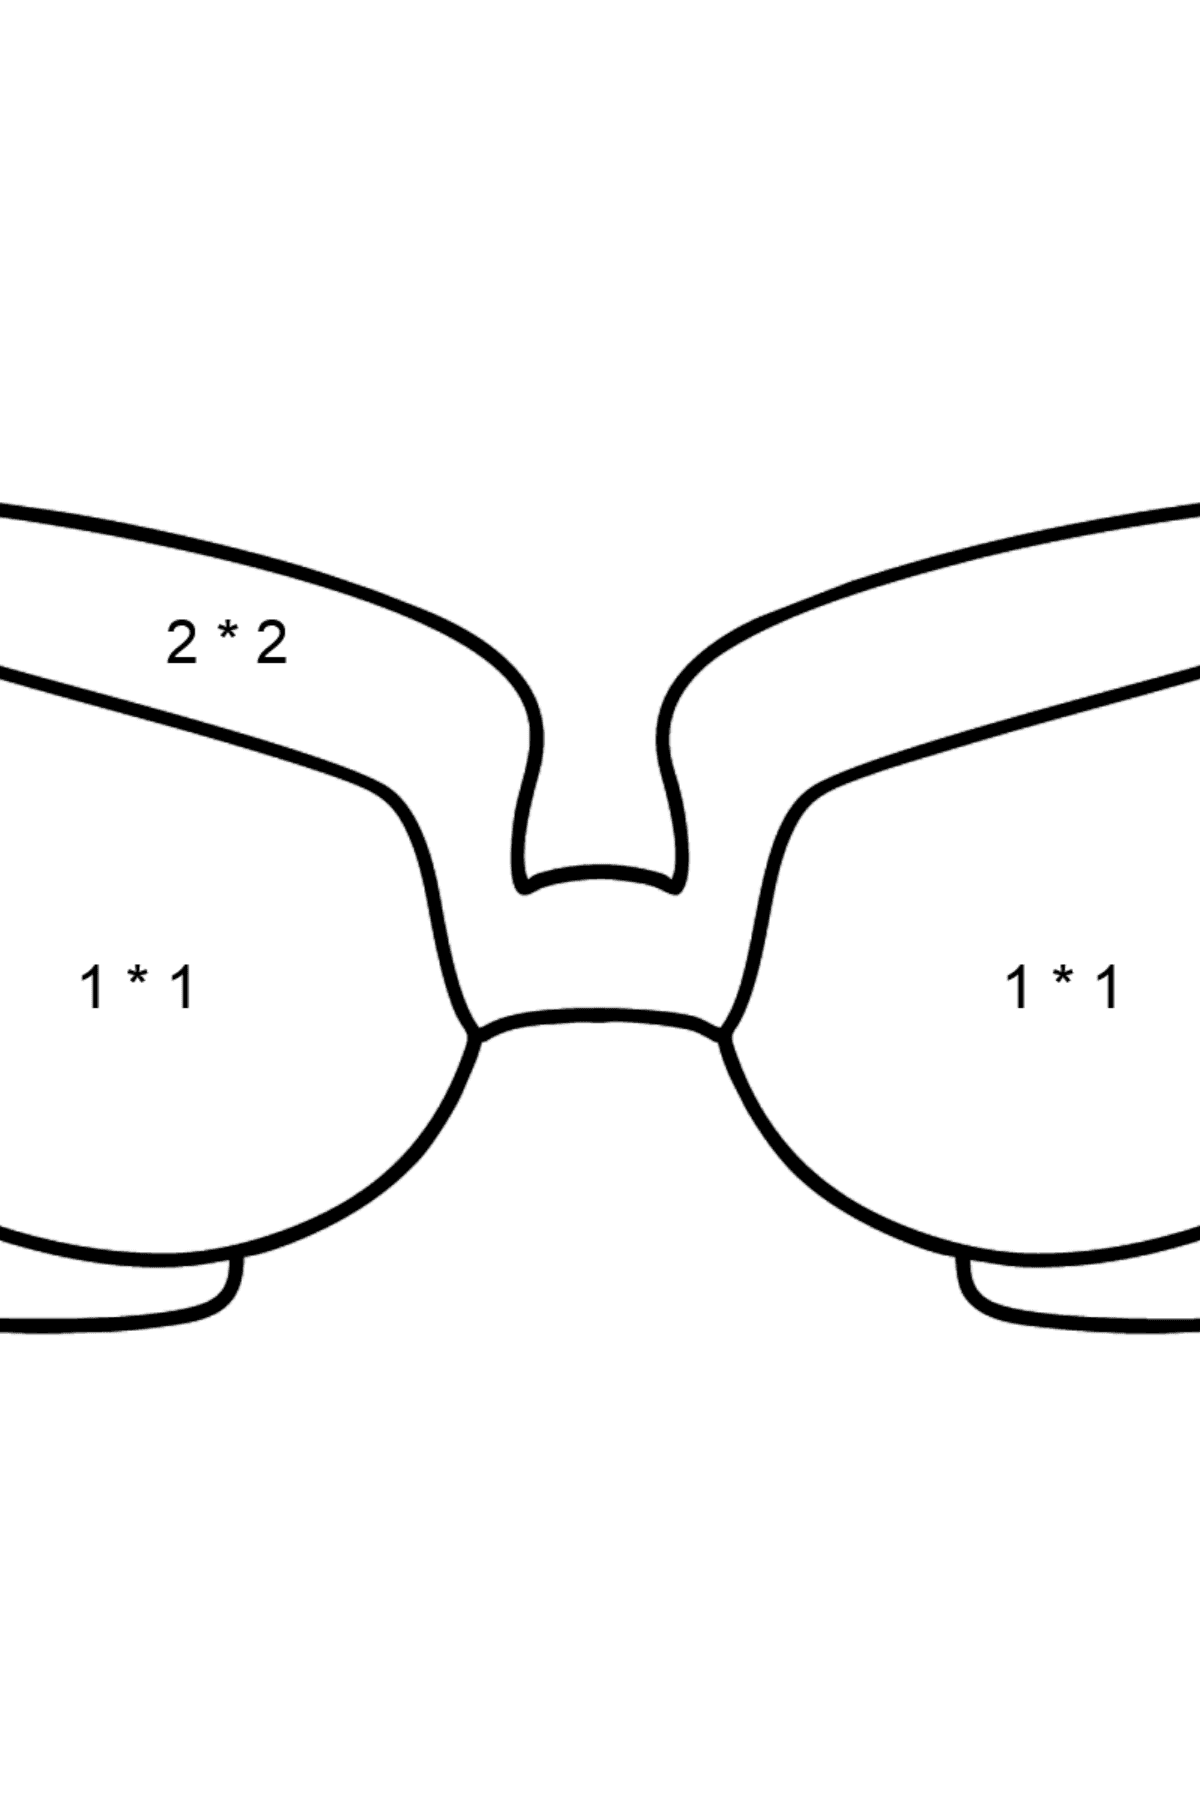 Óculos para colorir - Colorindo com Matemática - Multiplicação para Crianças